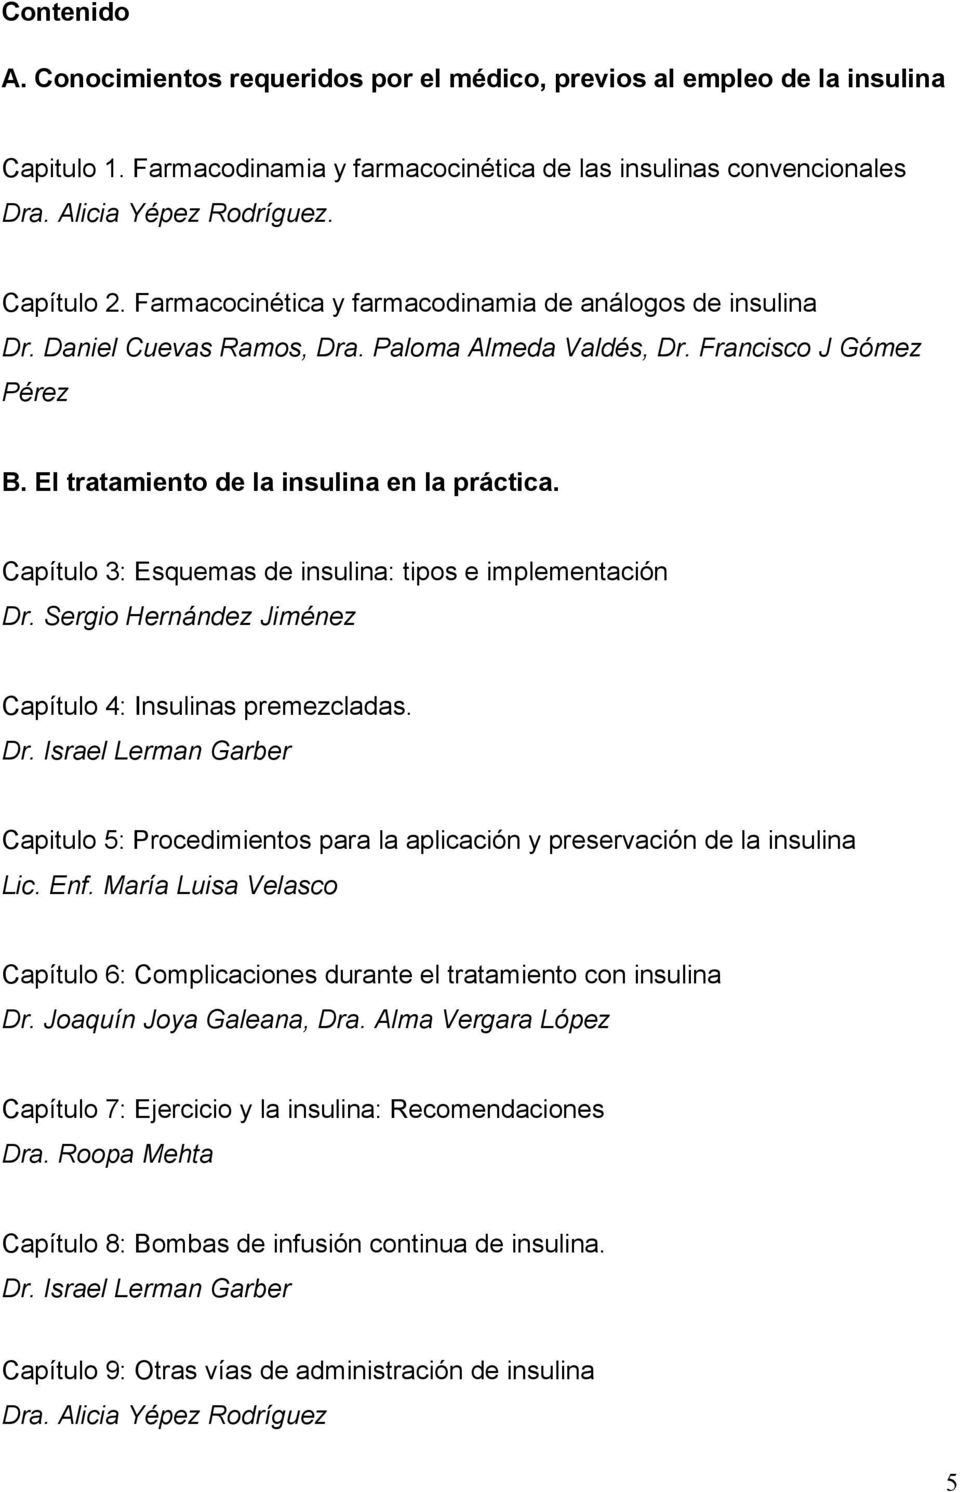 Capítulo 3: Esquemas de insulina: tipos e implementación Dr. Sergio Hernández Jiménez Capítulo 4: Insulinas premezcladas. Dr. Israel Lerman Garber Capitulo 5: Procedimientos para la aplicación y preservación de la insulina Lic.